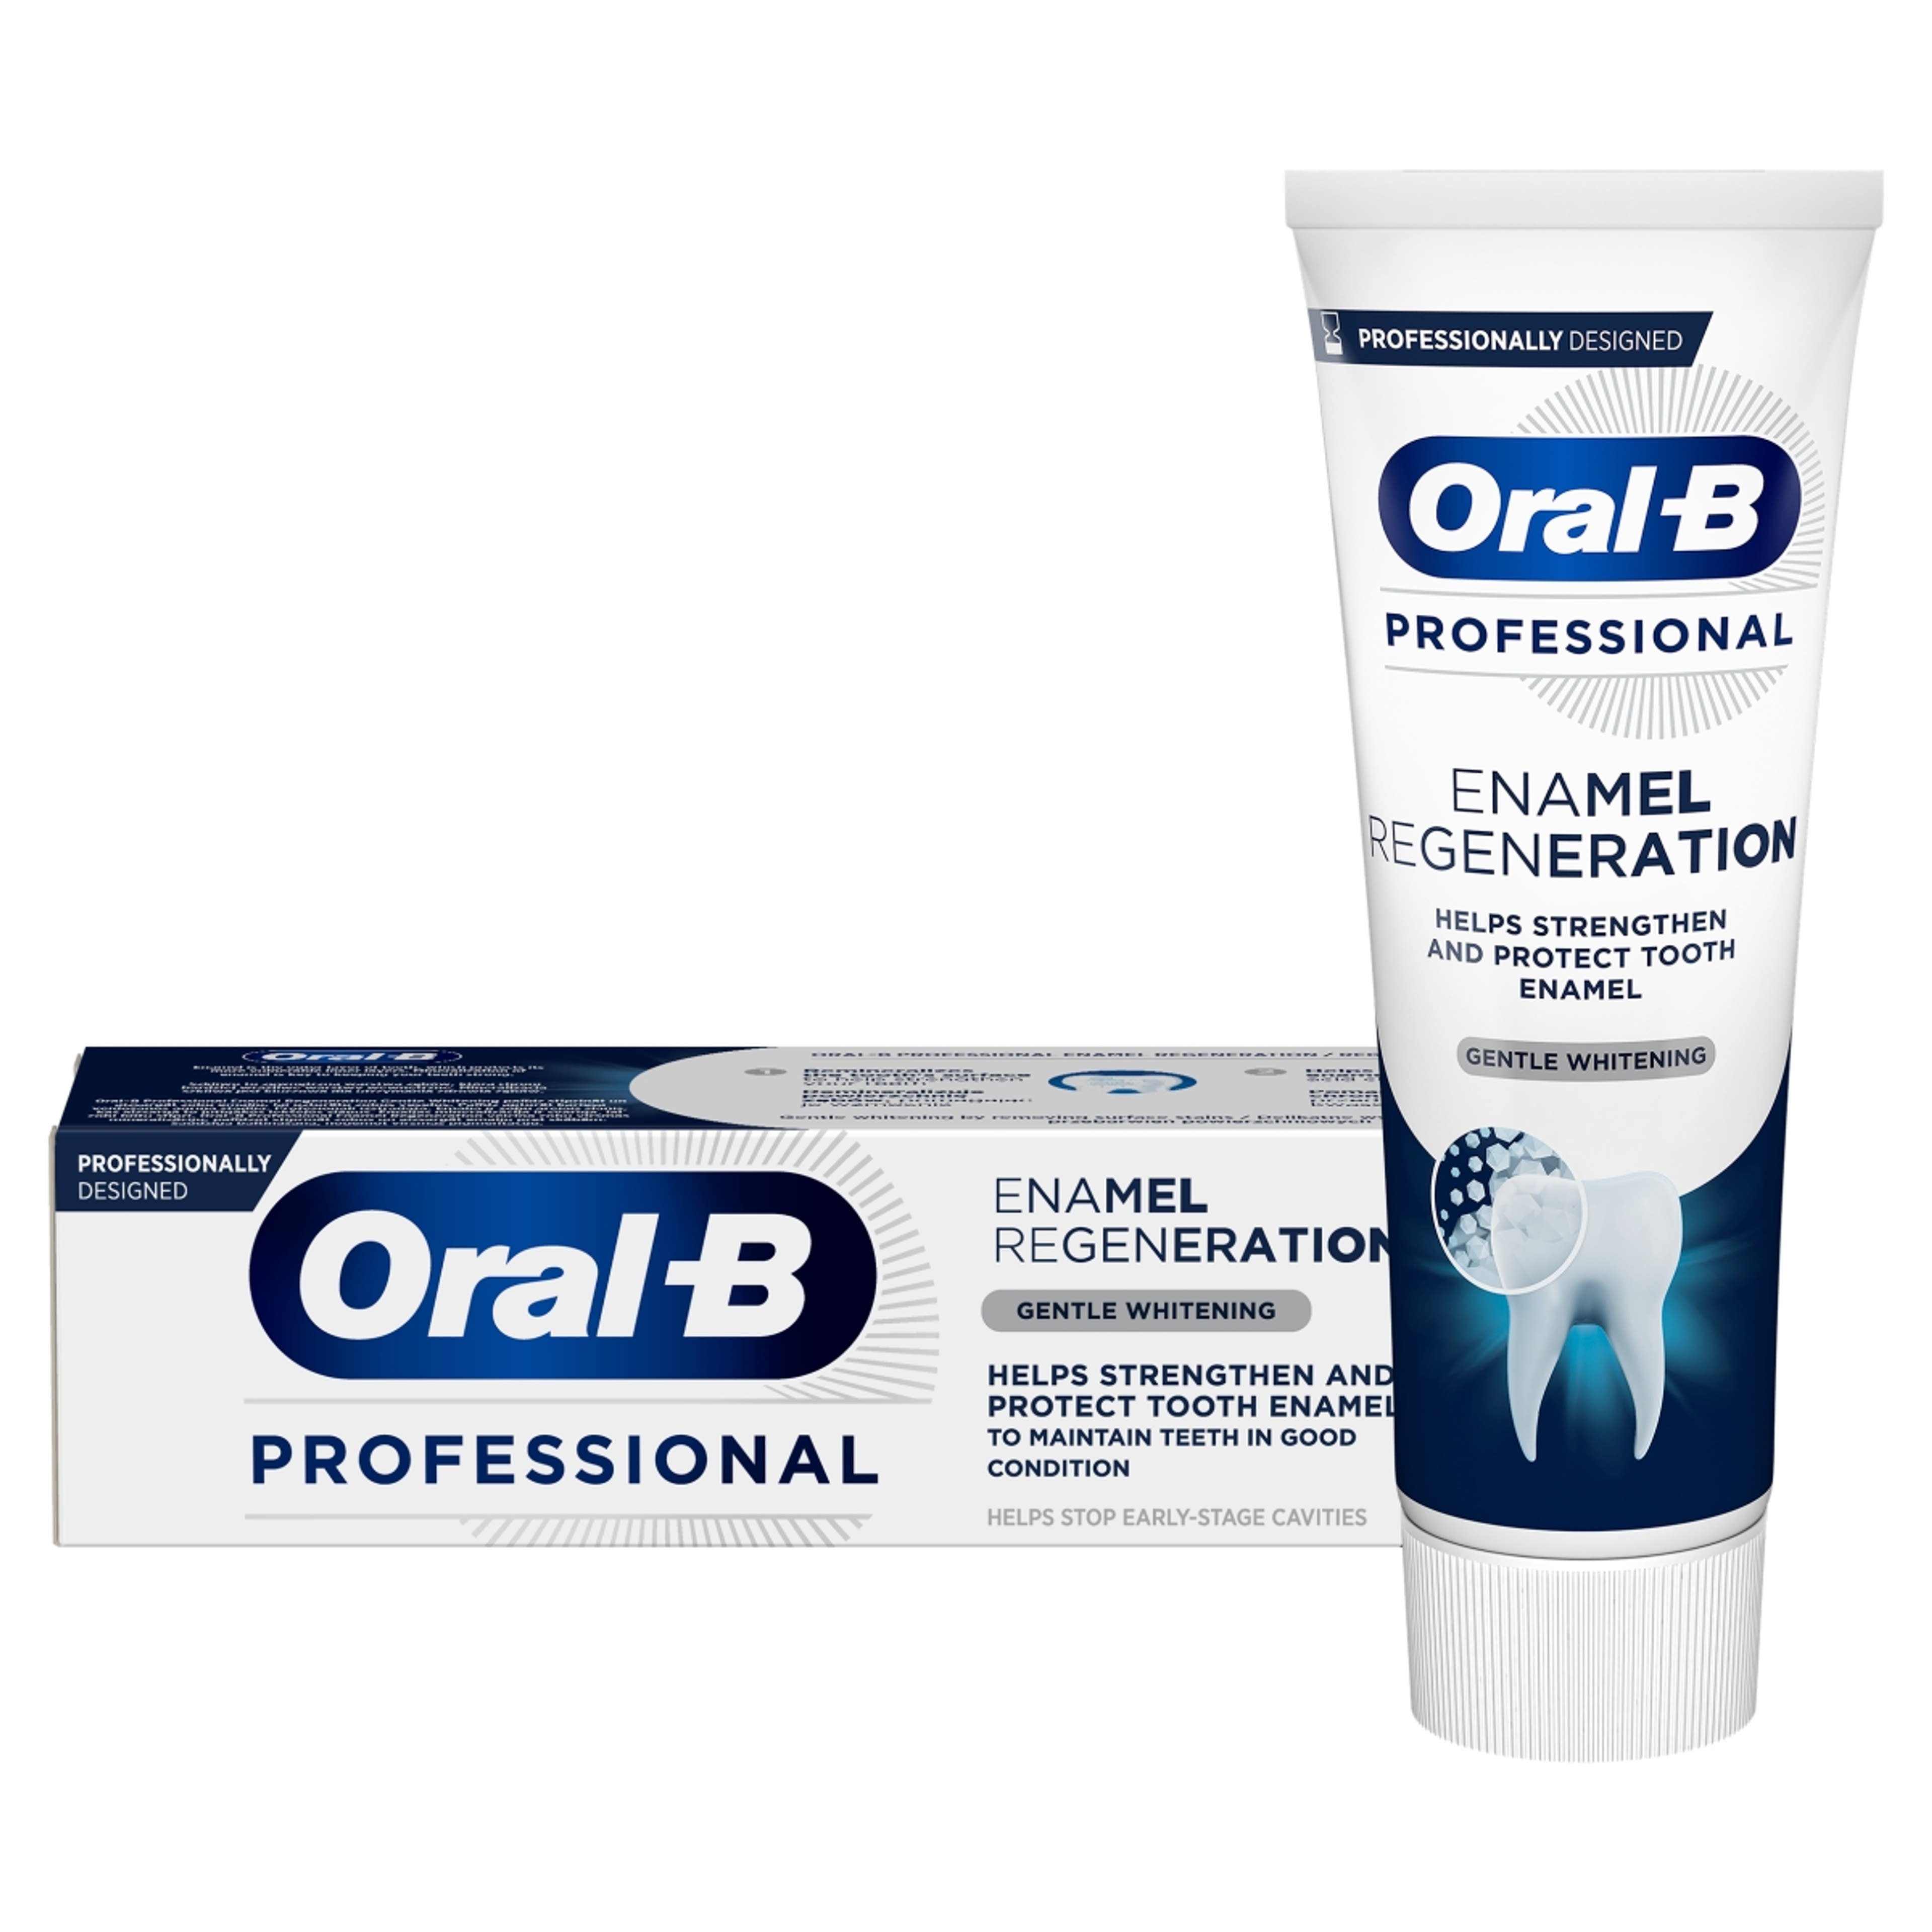 Oral-B Professional Regenerate Enamel Gentle Whitening fogkrém - 75 ml-2